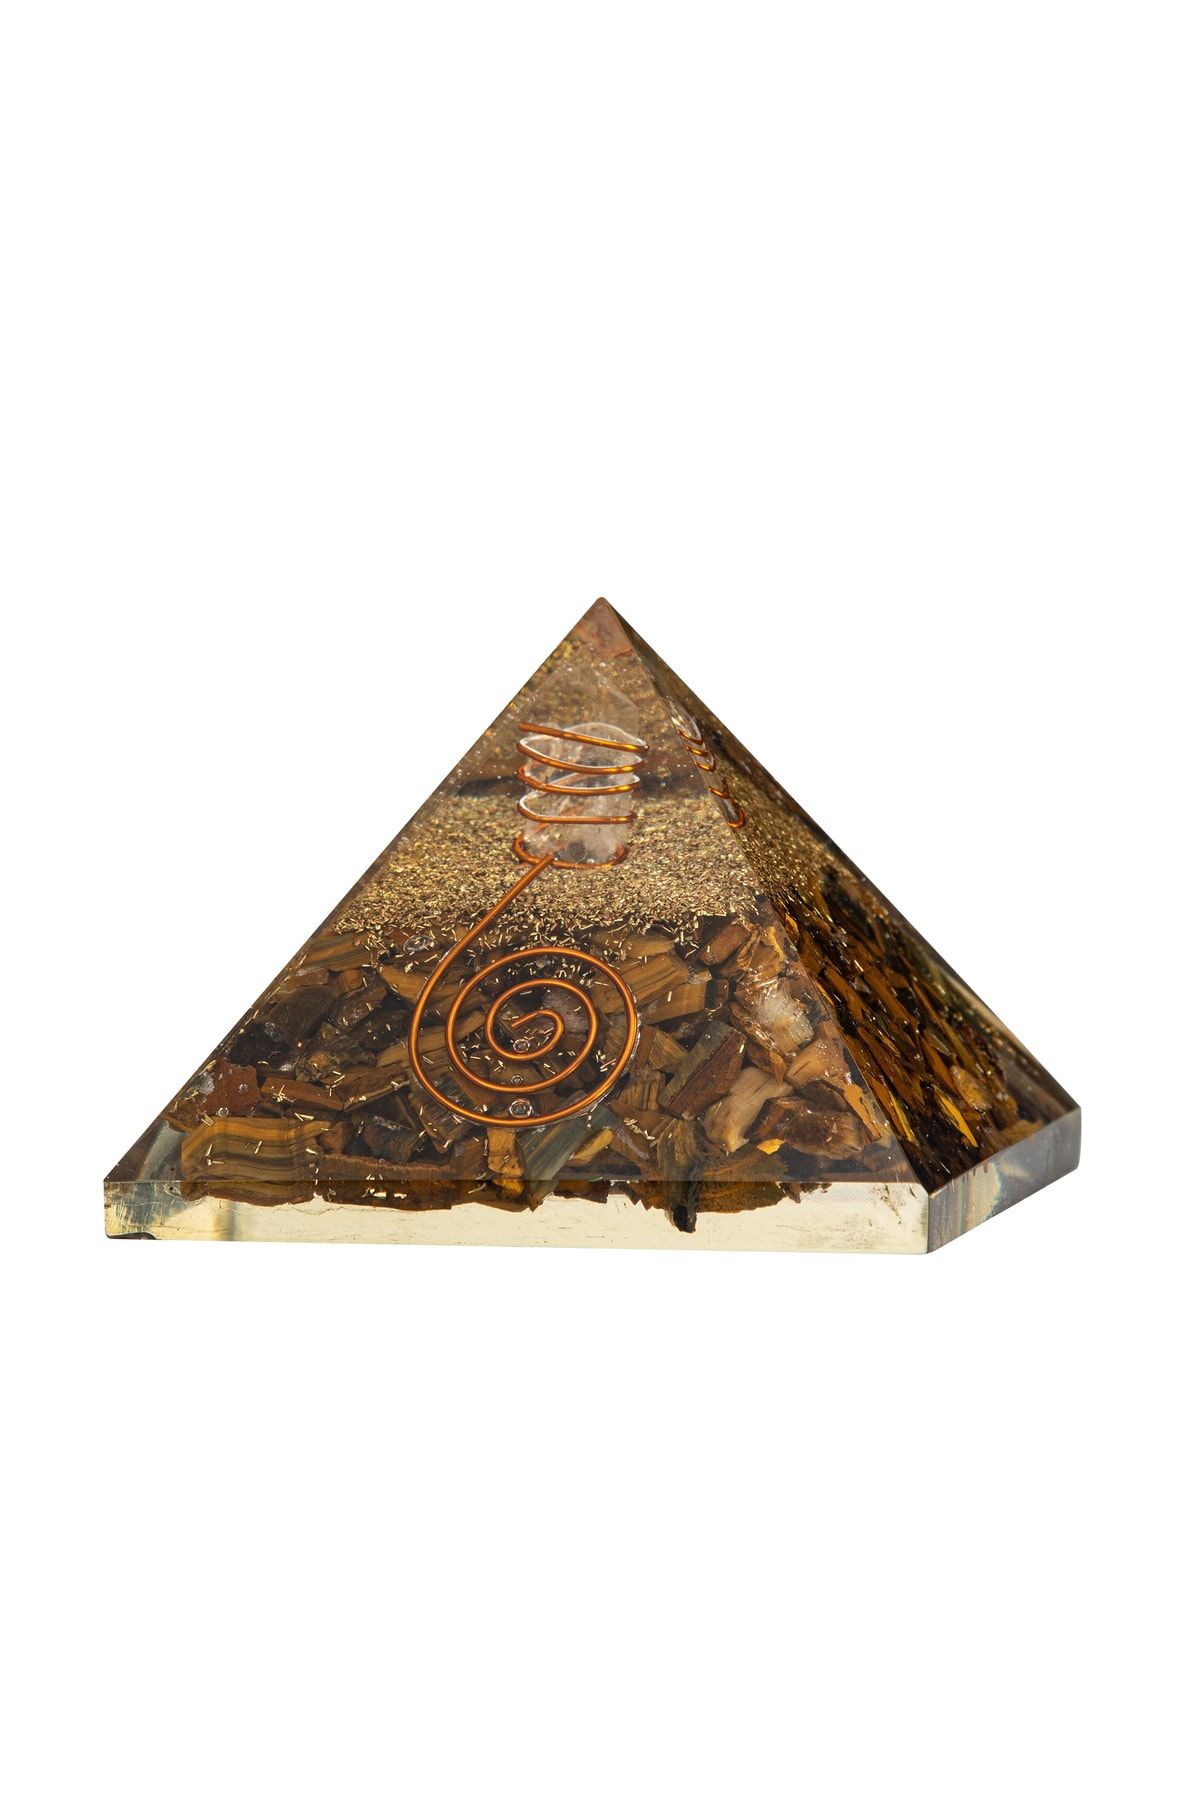 OSMANLI DOĞAL TAŞ Kaplan Gözü Doğal Taş Organit Piramit - 6cm